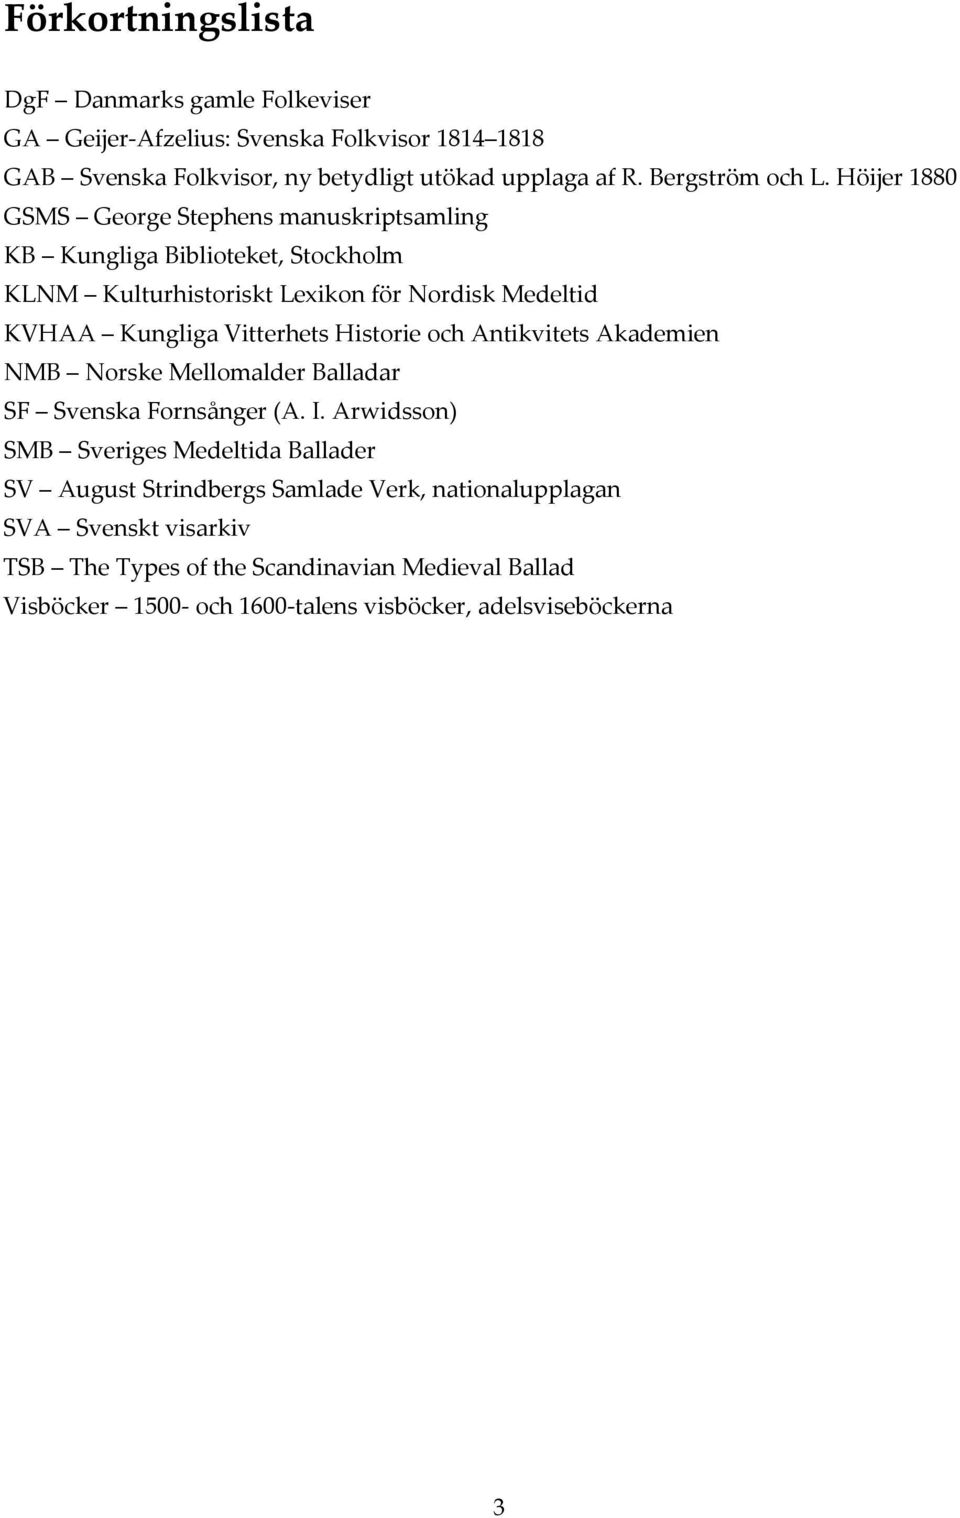 Höijer 1880 GSMS George Stephens manuskriptsamling KB Kungliga Biblioteket, Stockholm KLNM Kulturhistoriskt Lexikon för Nordisk Medeltid KVHAA Kungliga Vitterhets